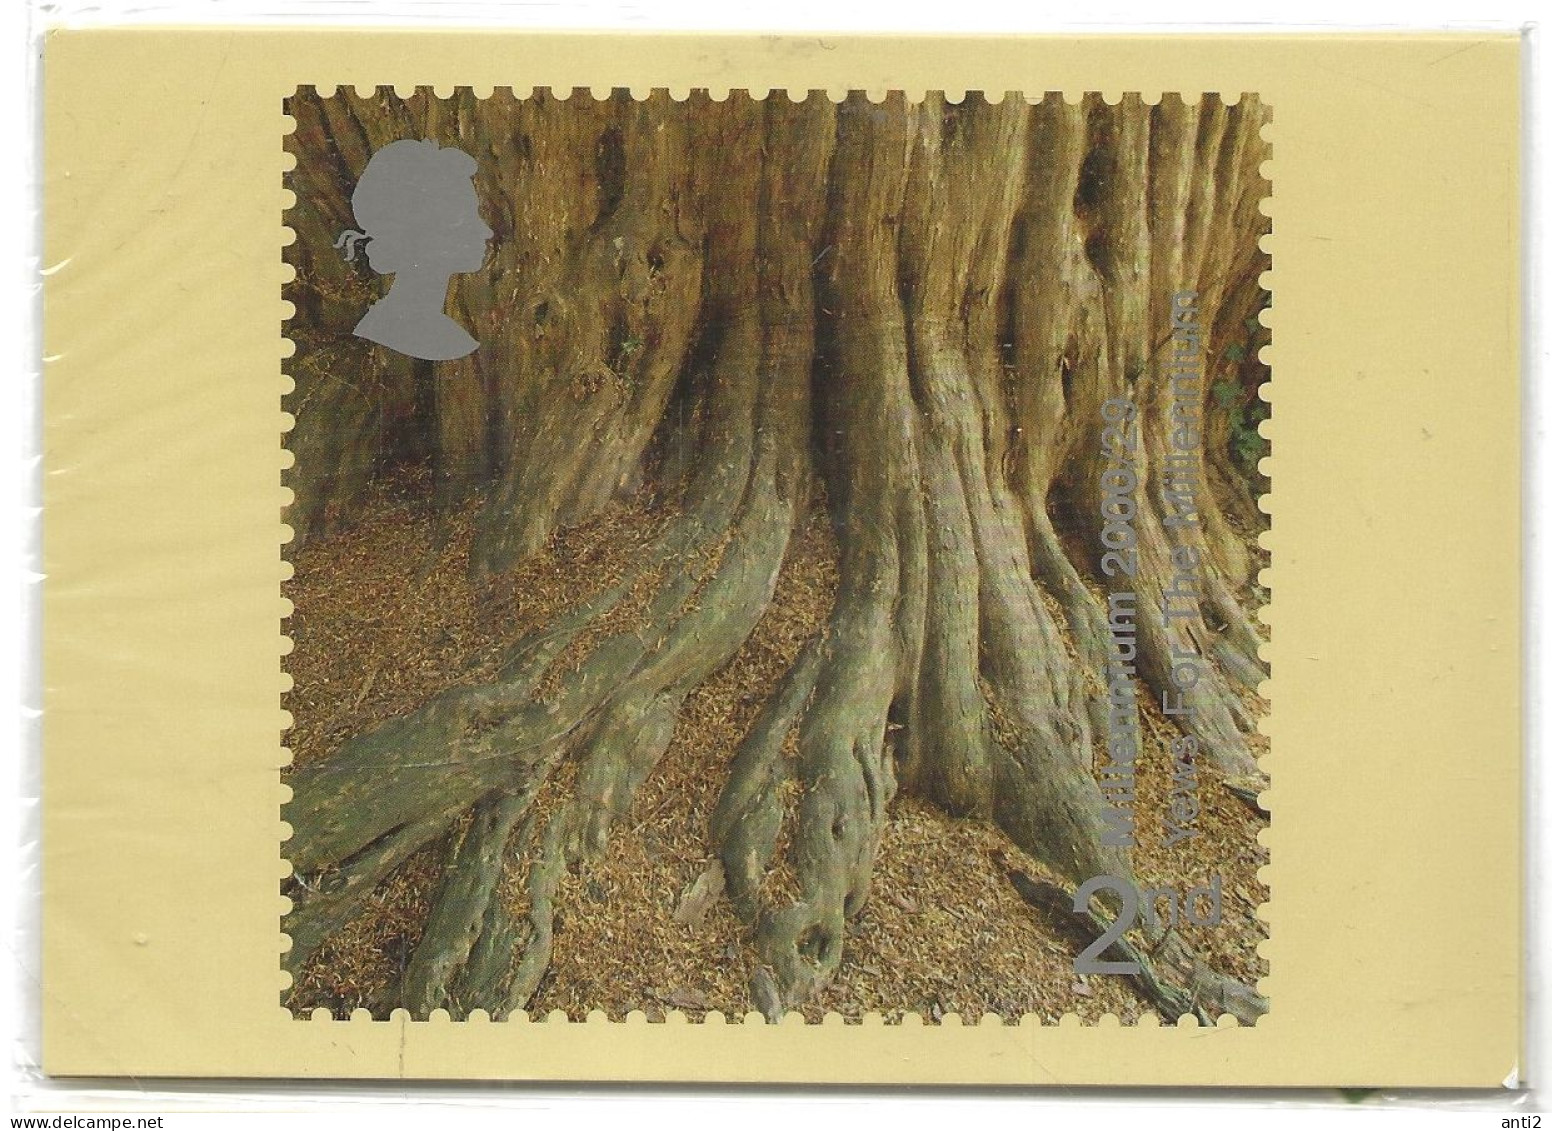 Great Britain  2000 Turn Of The Millennium (XXIII): Tree And Leaves, Mi 1881-1884 Unused  Maximum Cards No Stamps - Cartes-Maximum (CM)